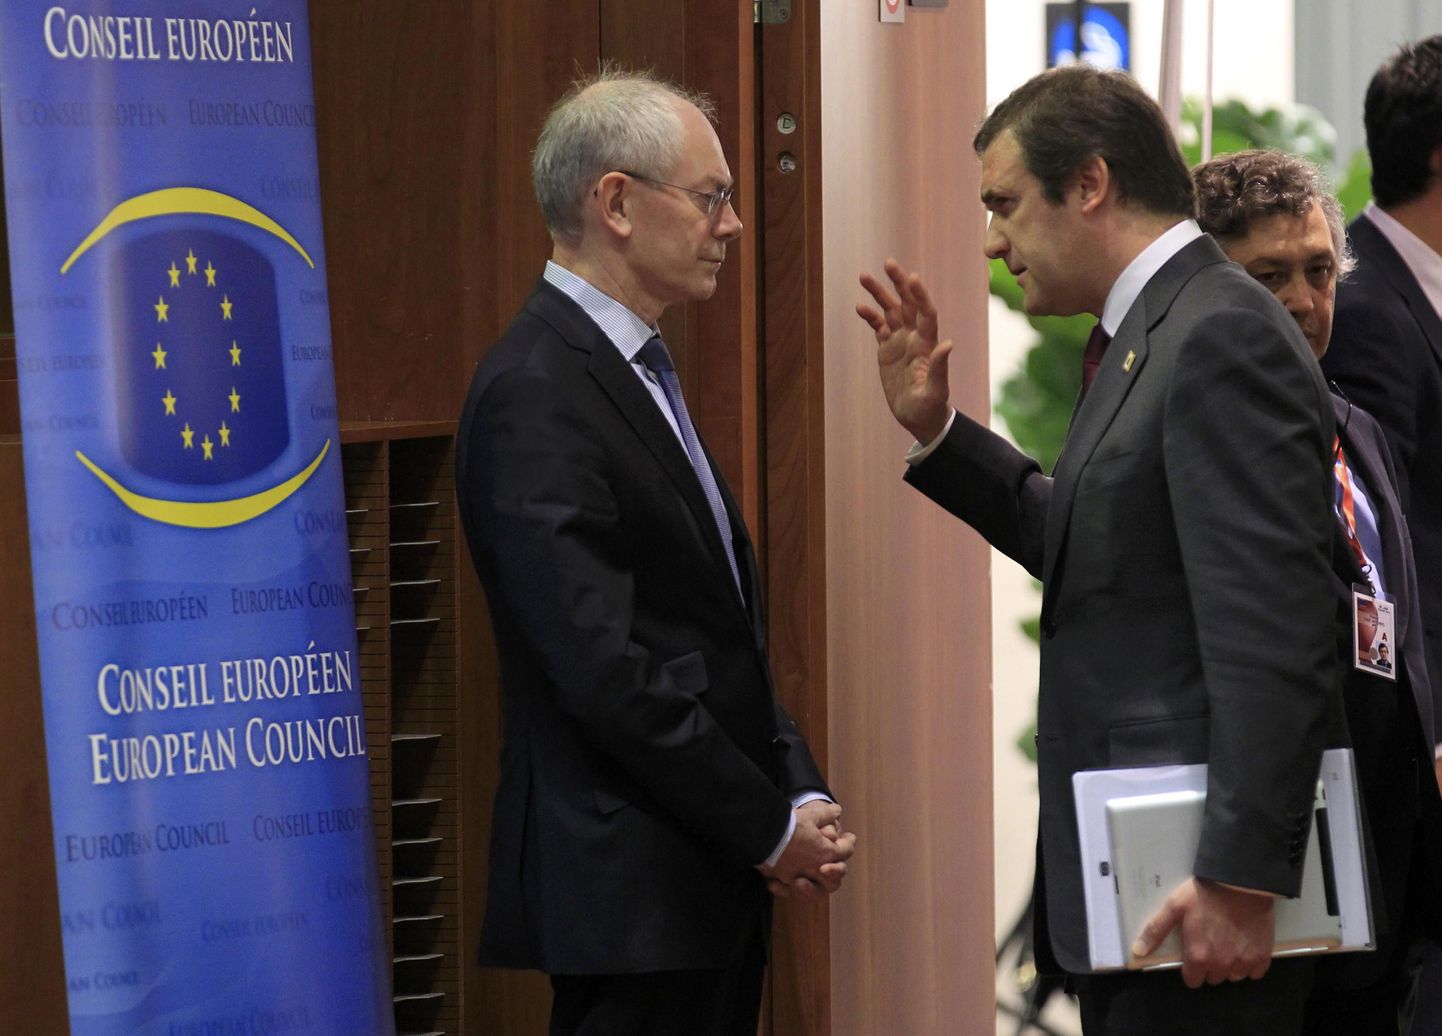 Portugali peaminister Pedro Passos Coelho ja Euroopa Ülemkogu eesistuja Herman van Rompuy täna Brüsselis.